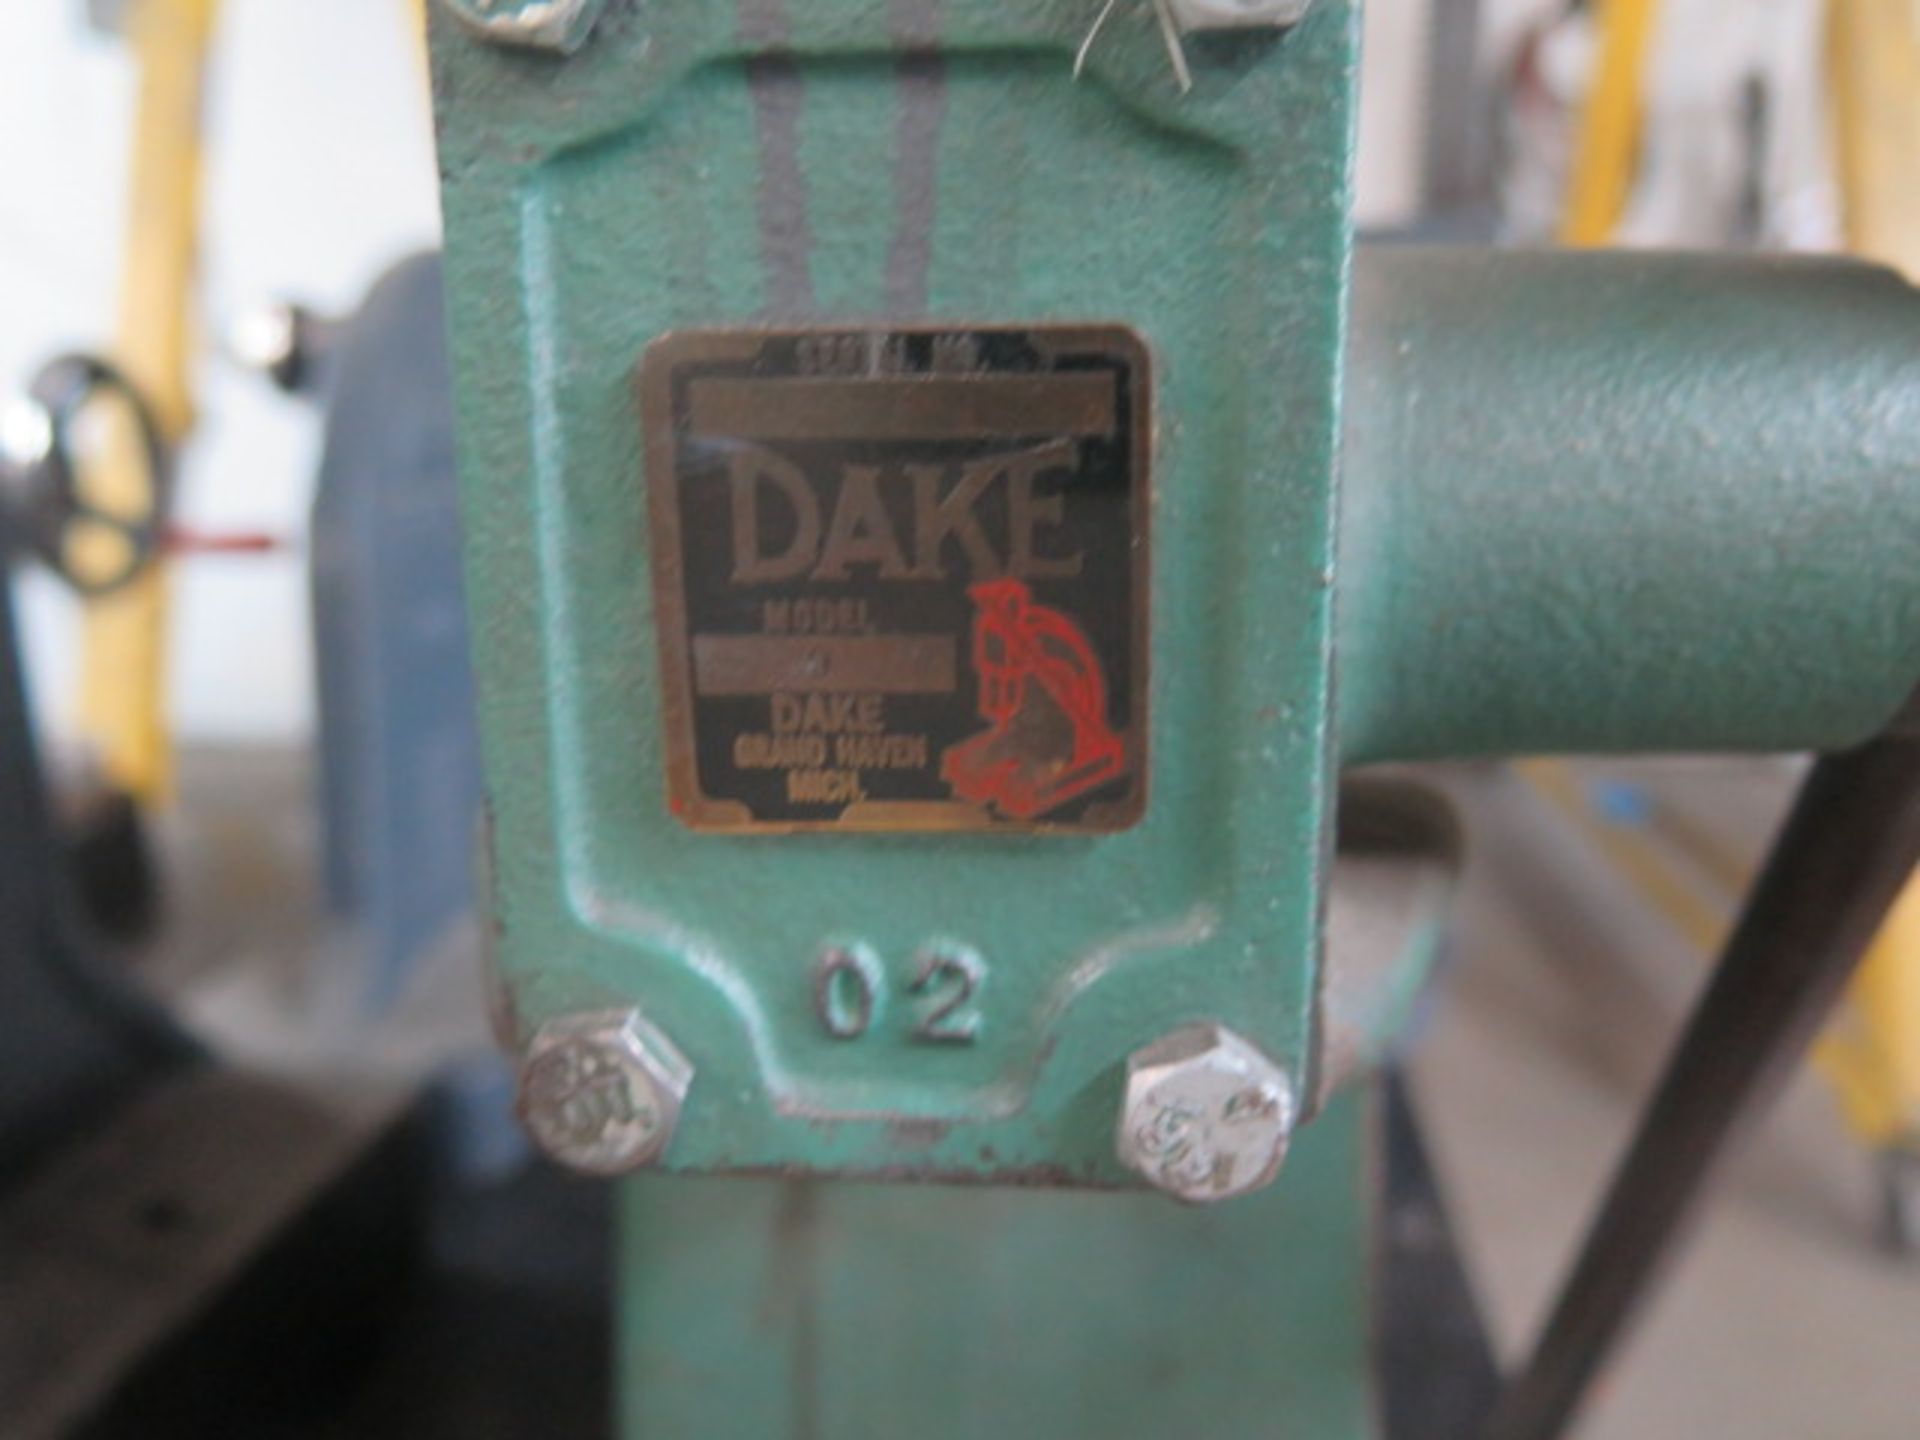 Dake No. 0 Arbor Press (SOLD AS-IS - NO WARRANTY) - Image 4 of 4